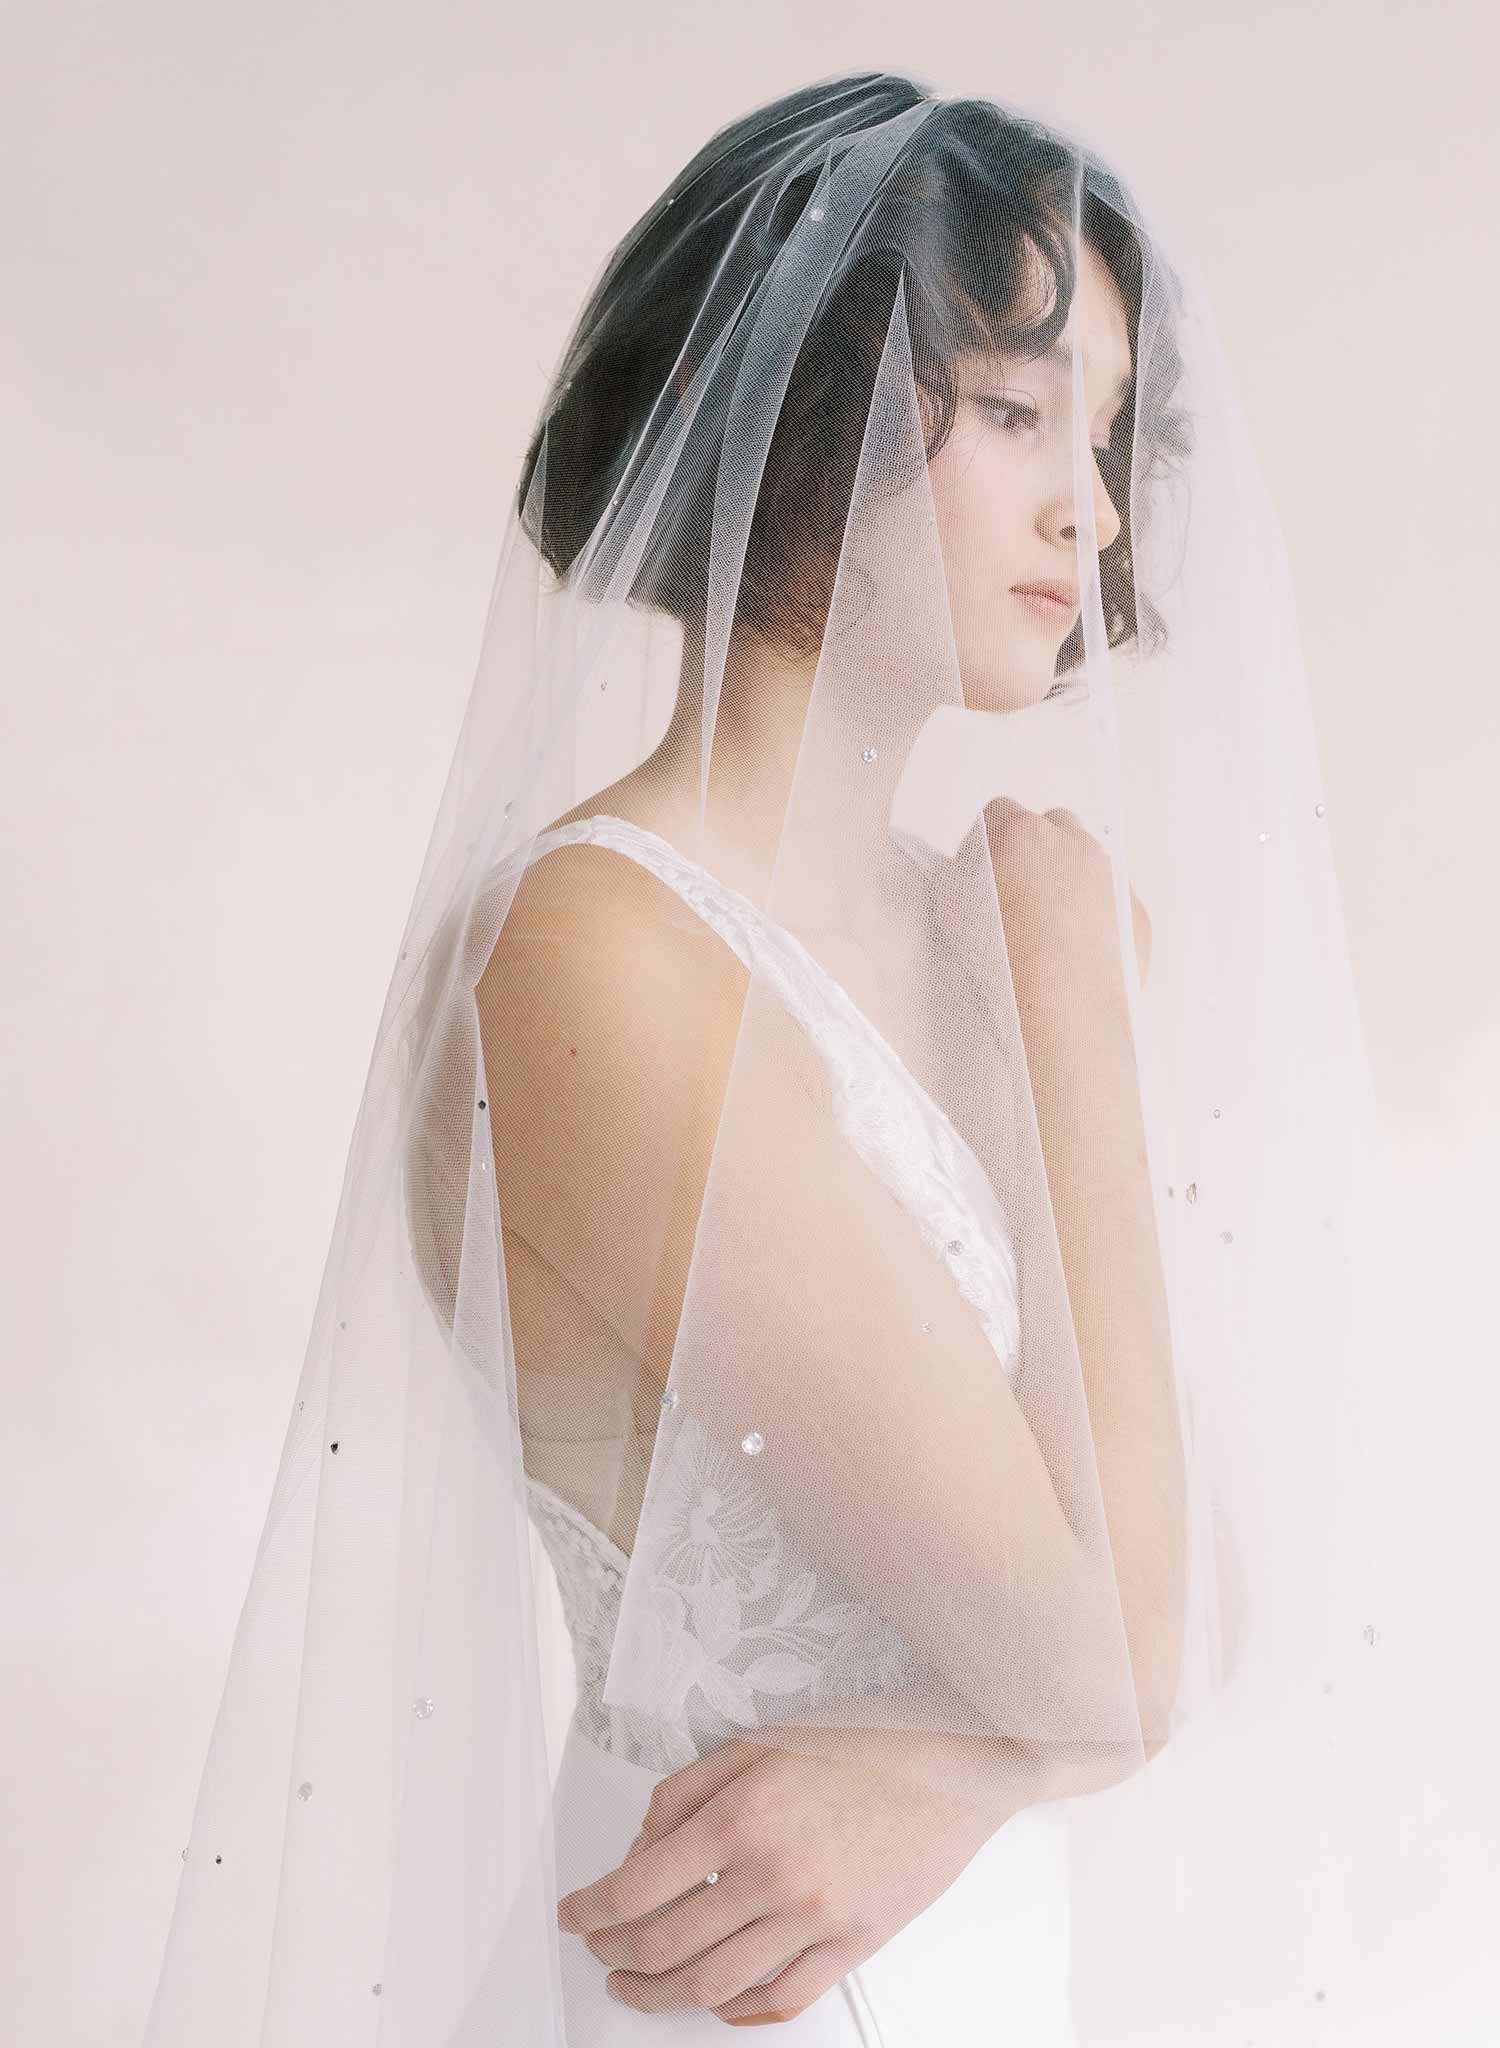 Veils - Bridal veils, birdcage veils, Tulle veils, Modern veils